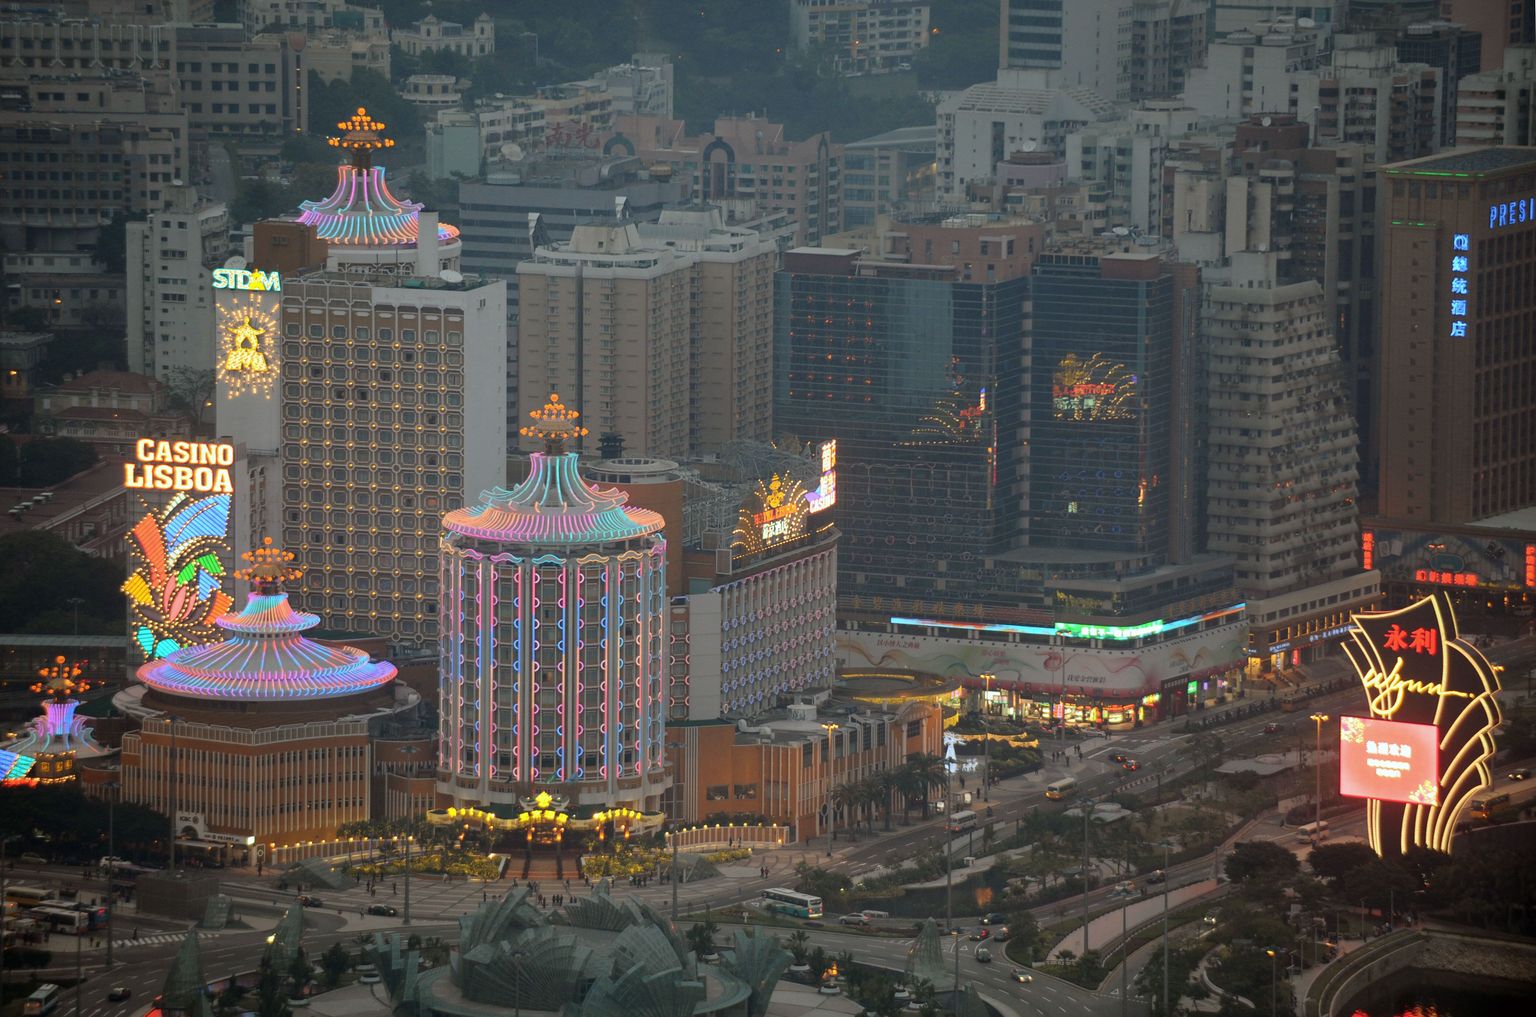 Macau.